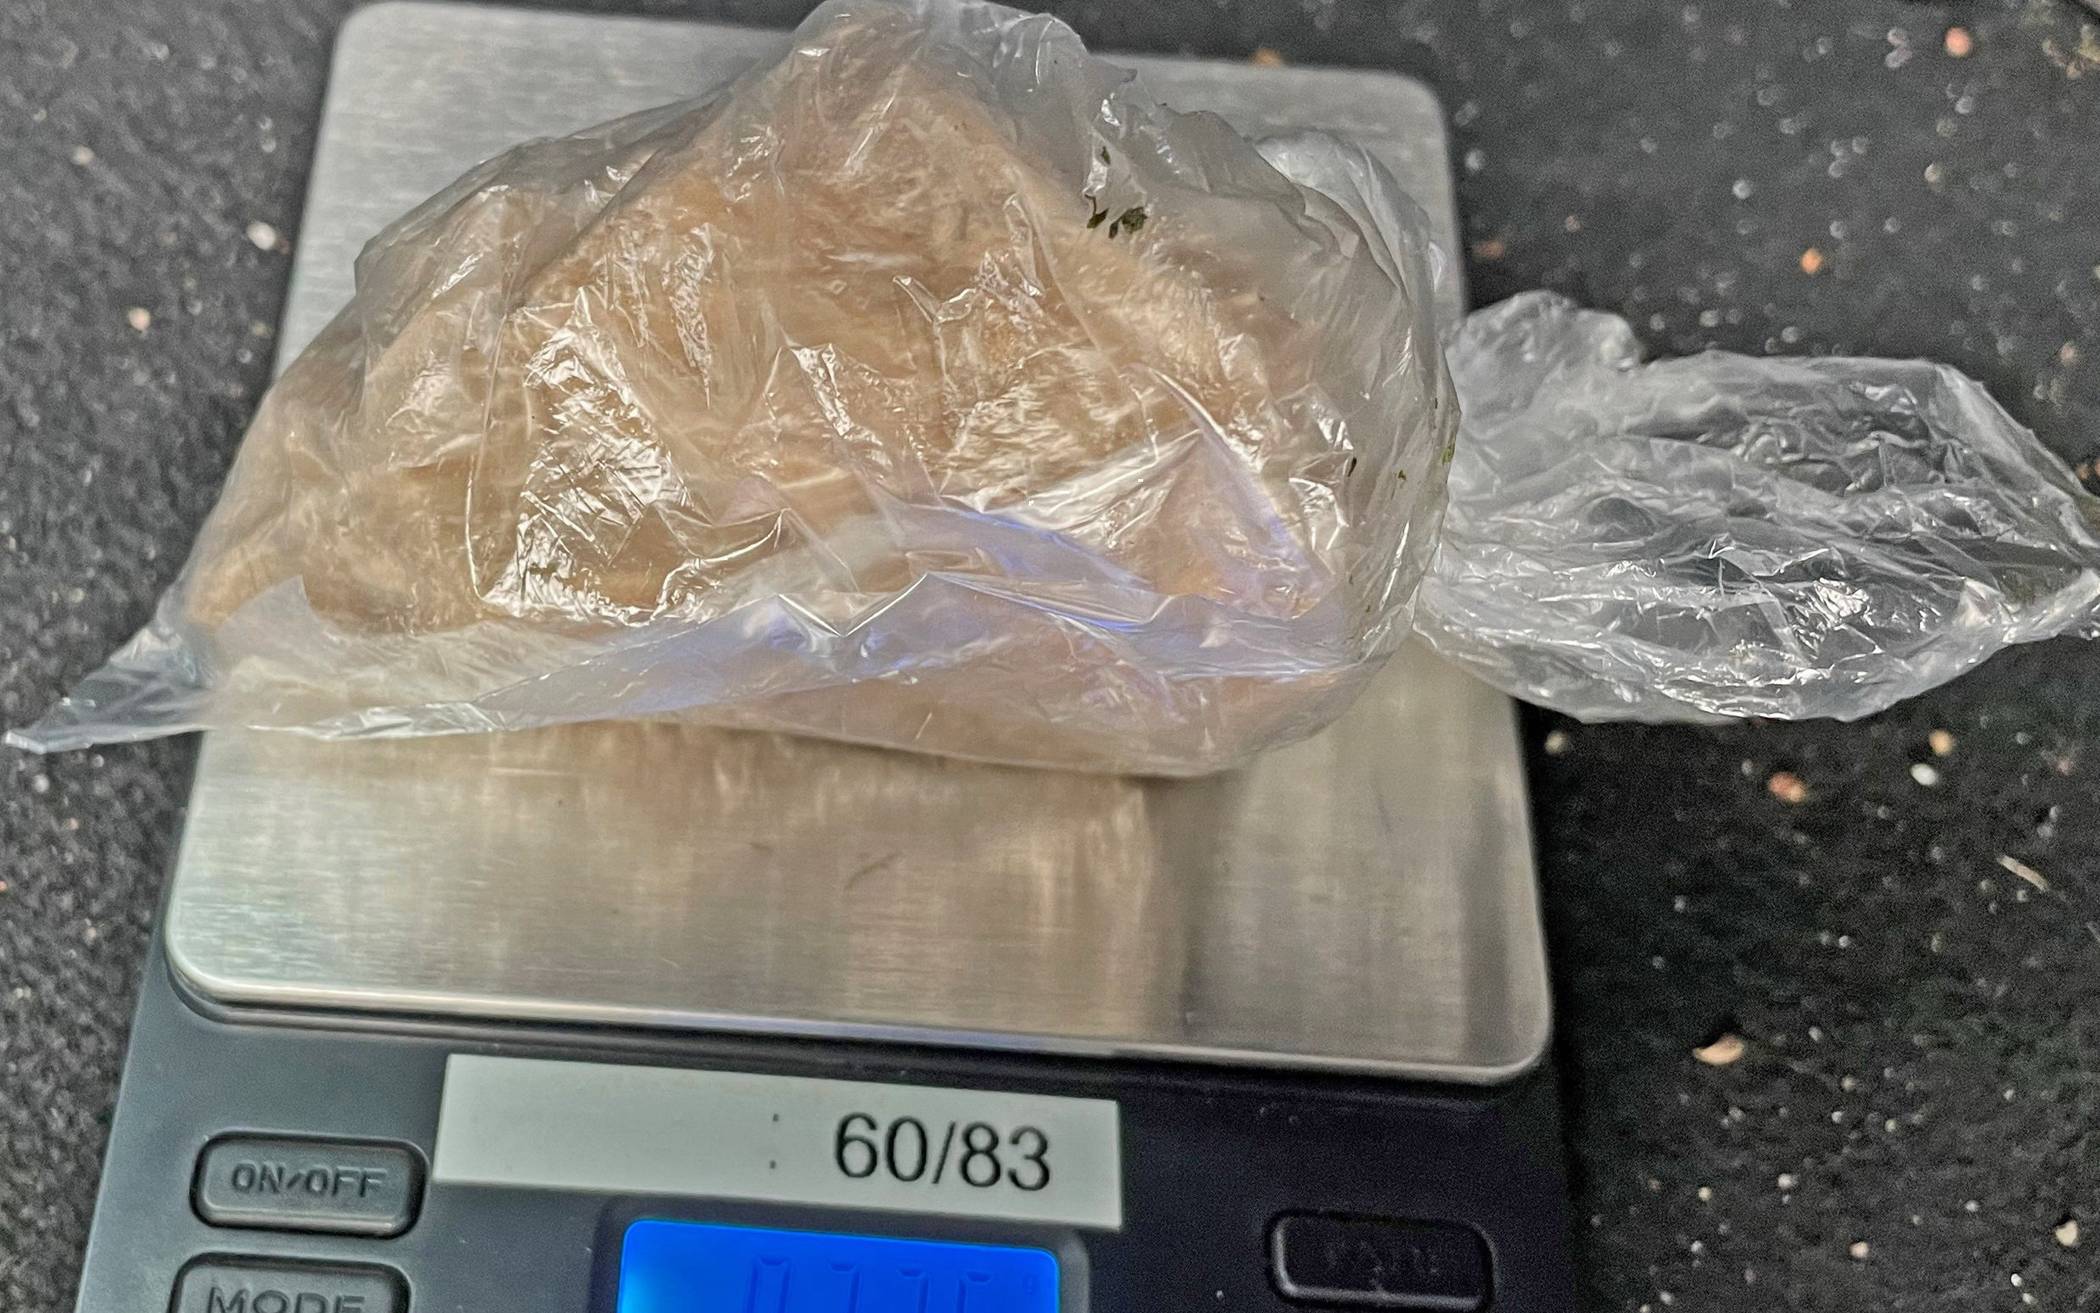  Das aufgefundene Heroin war in zwei kleinere Päckchen verpackt. 